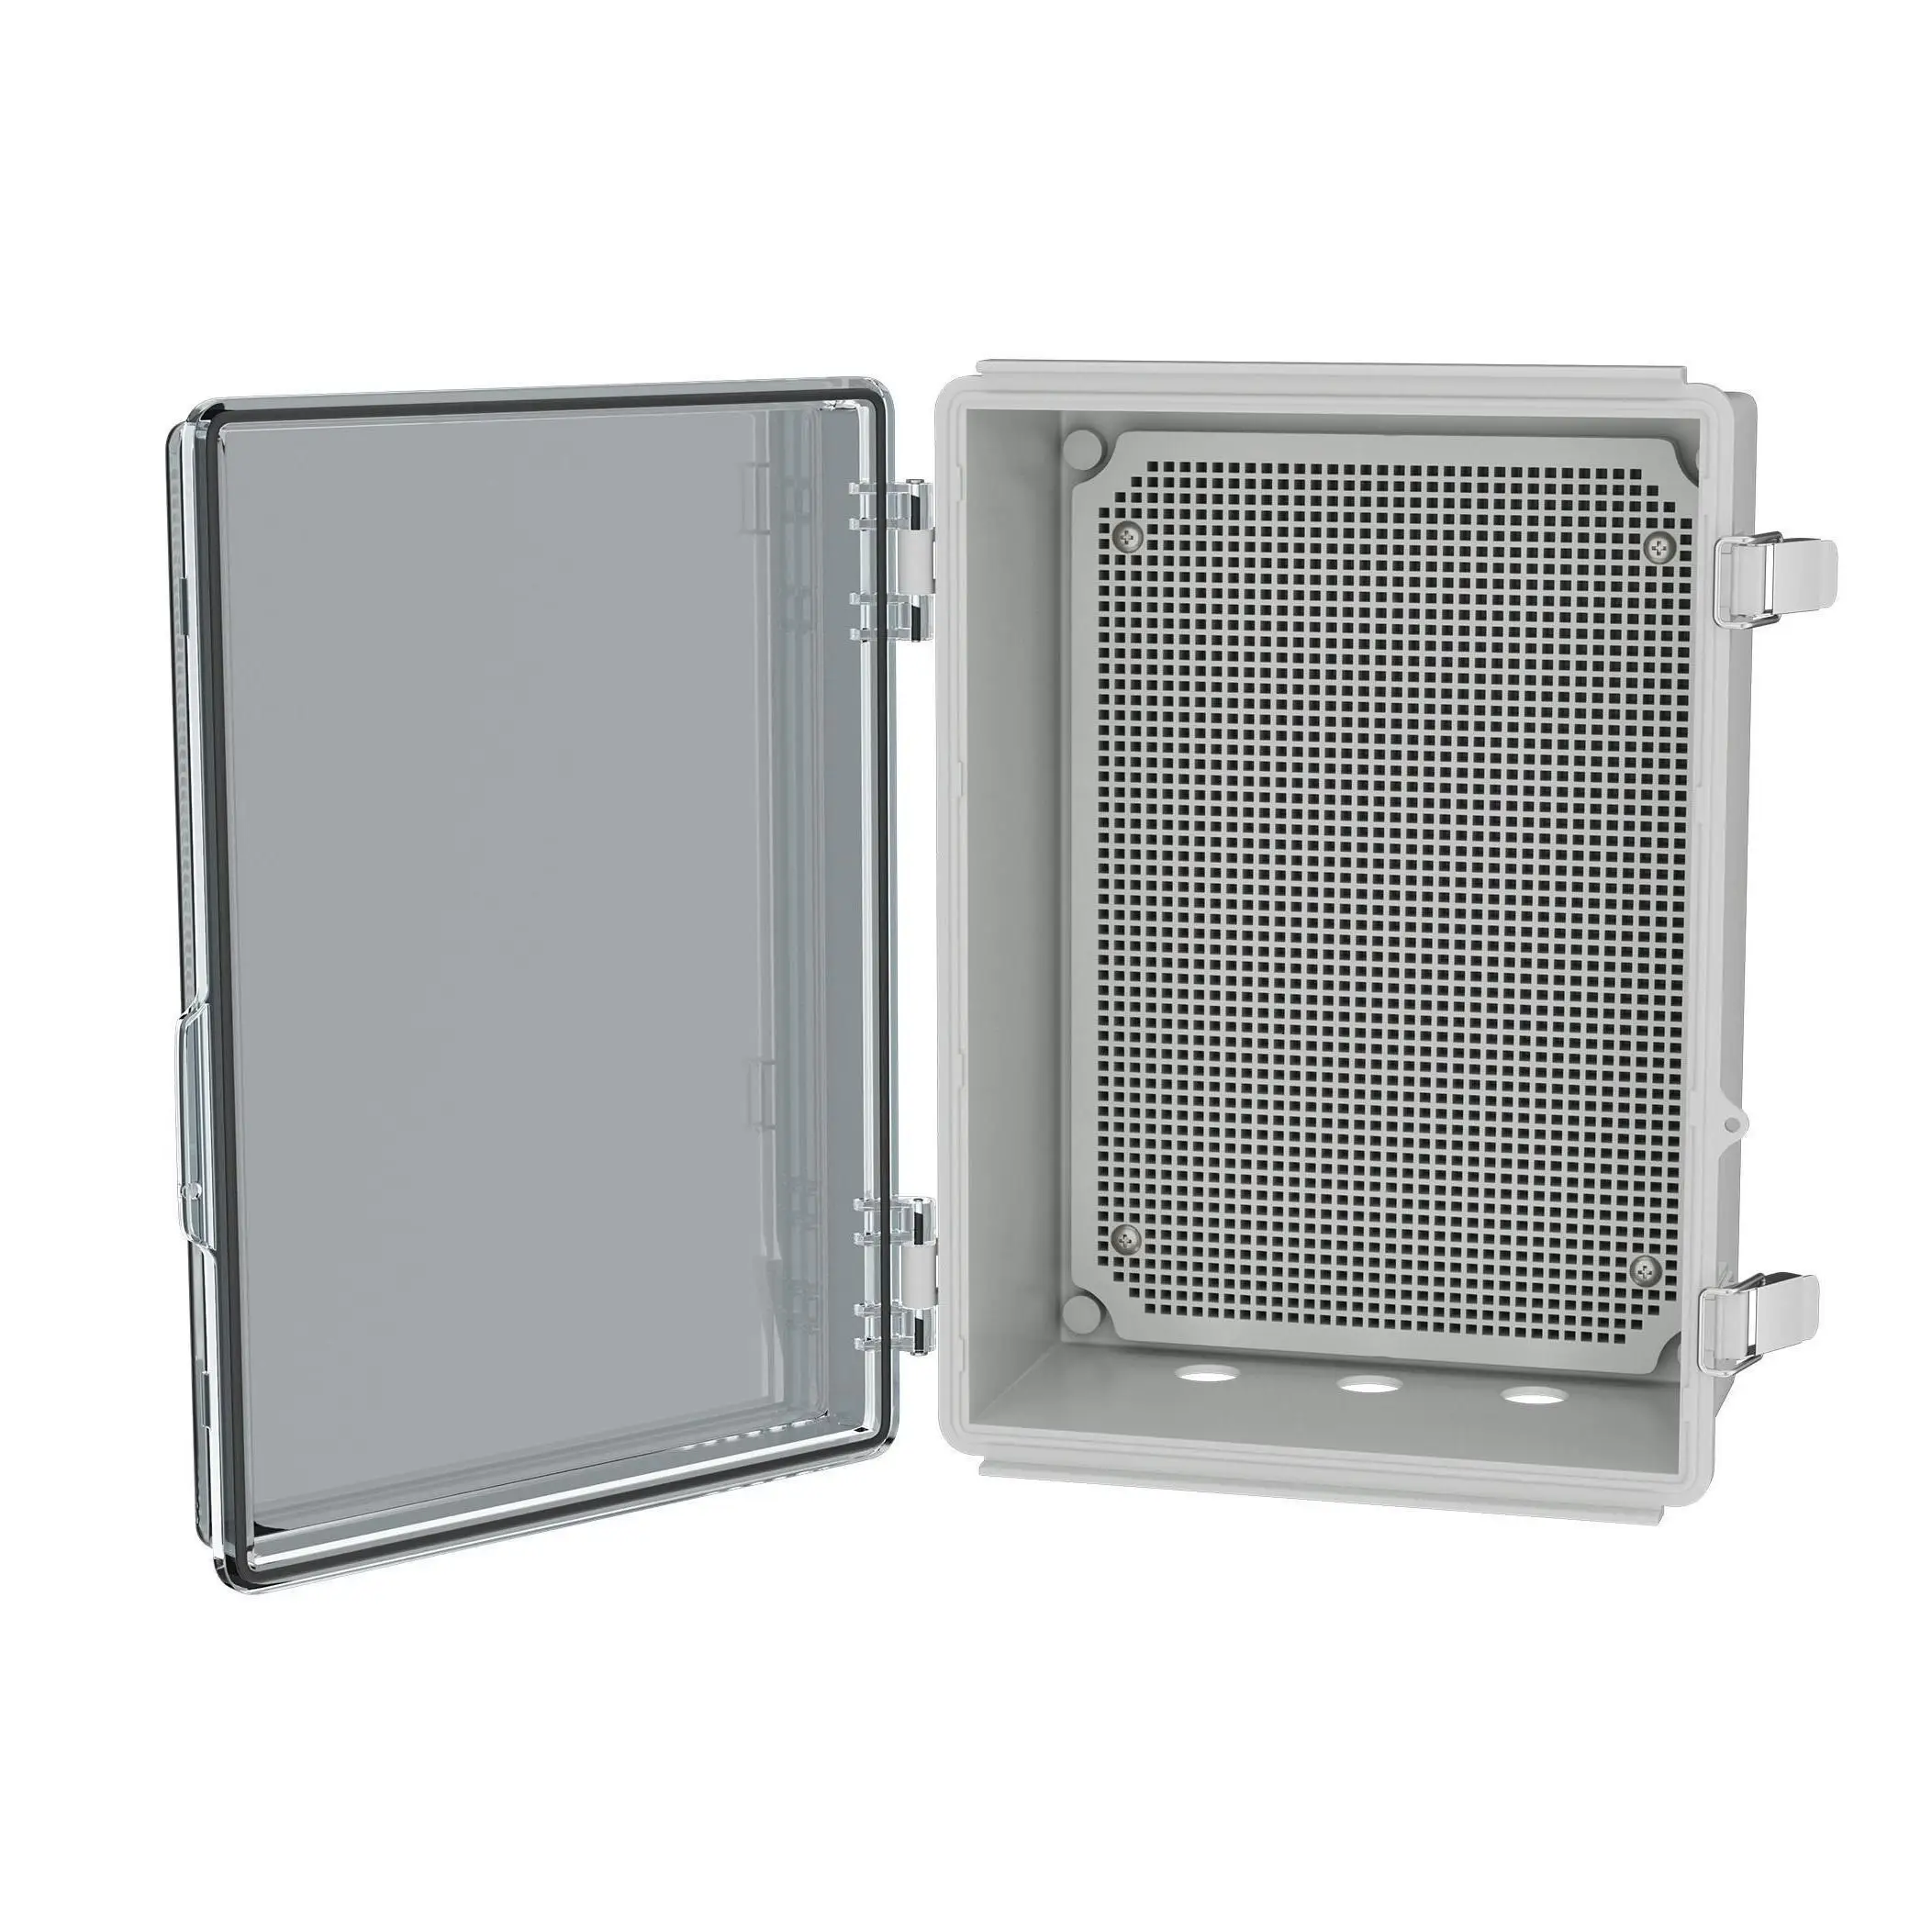 

IP67 Plastic Waterproof Electrical Junction Box Waterproof Electrical Boxes Outdoor Junction Box Outdoor Electrical